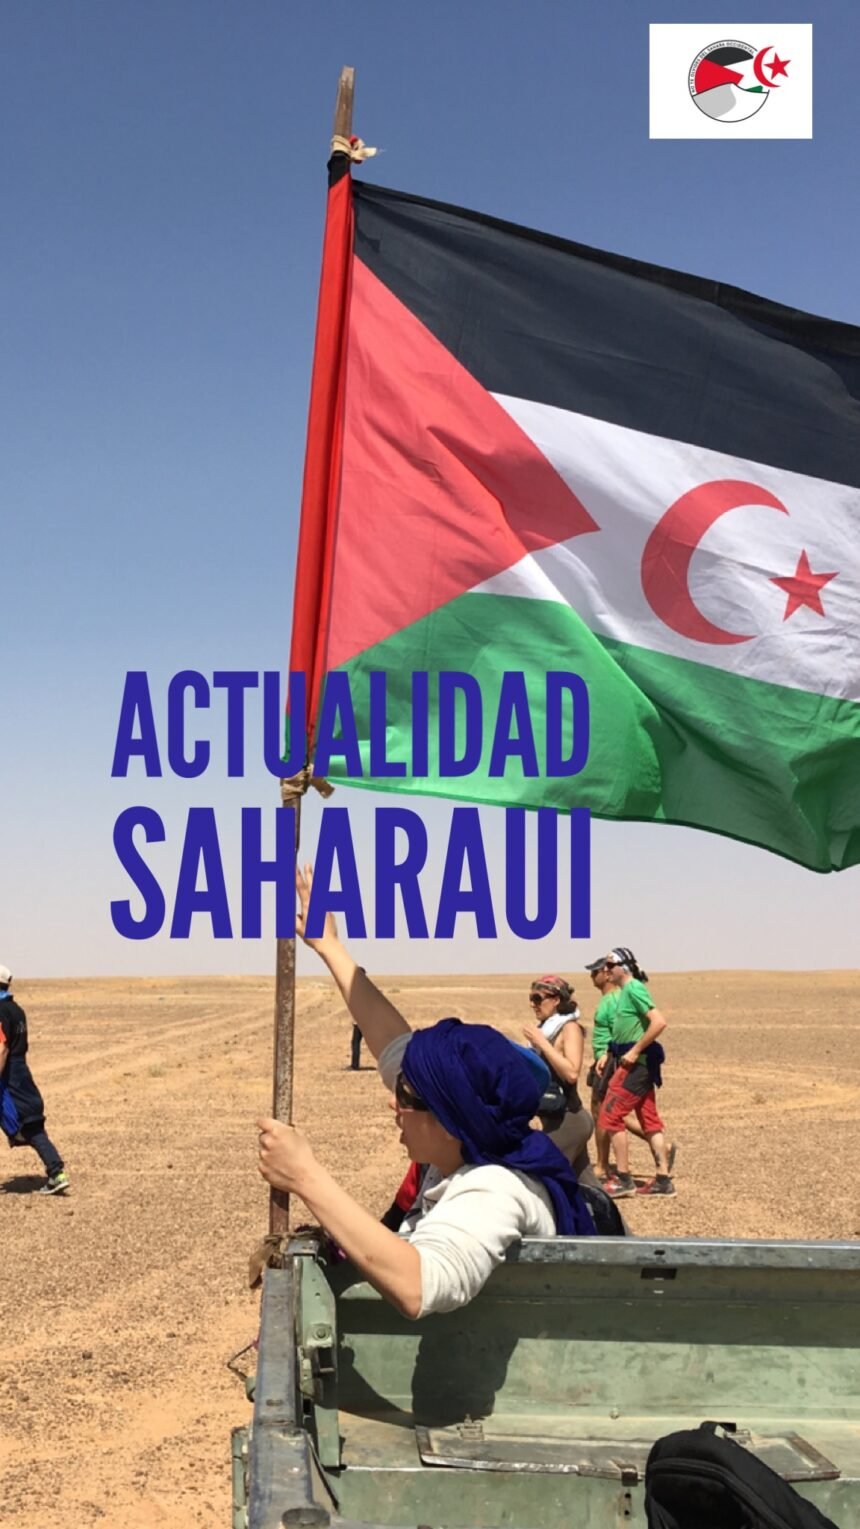 ⚡️ ?? Las noticias saharauis del 19 de diciembre de 2018: La #ActualidadSaharaui de HOY ????